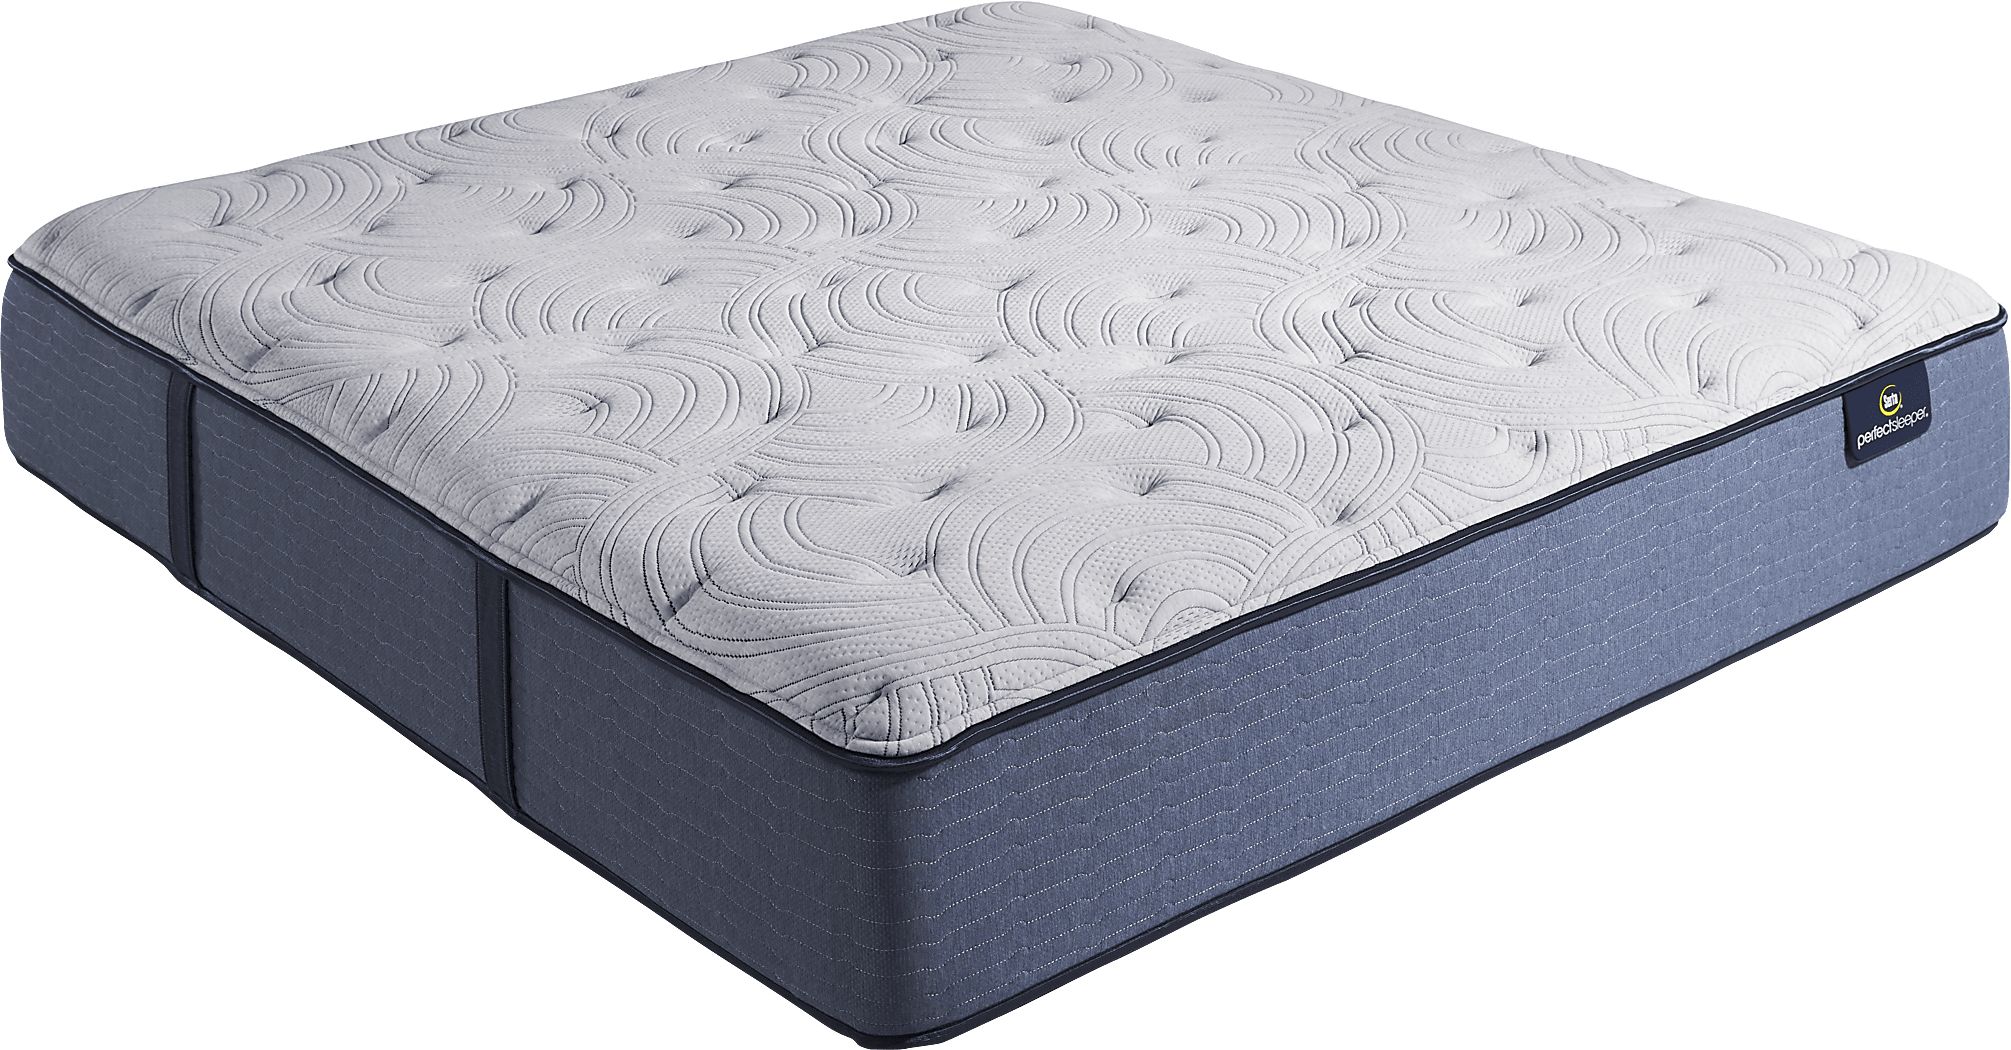 serta california king mattress dimensions